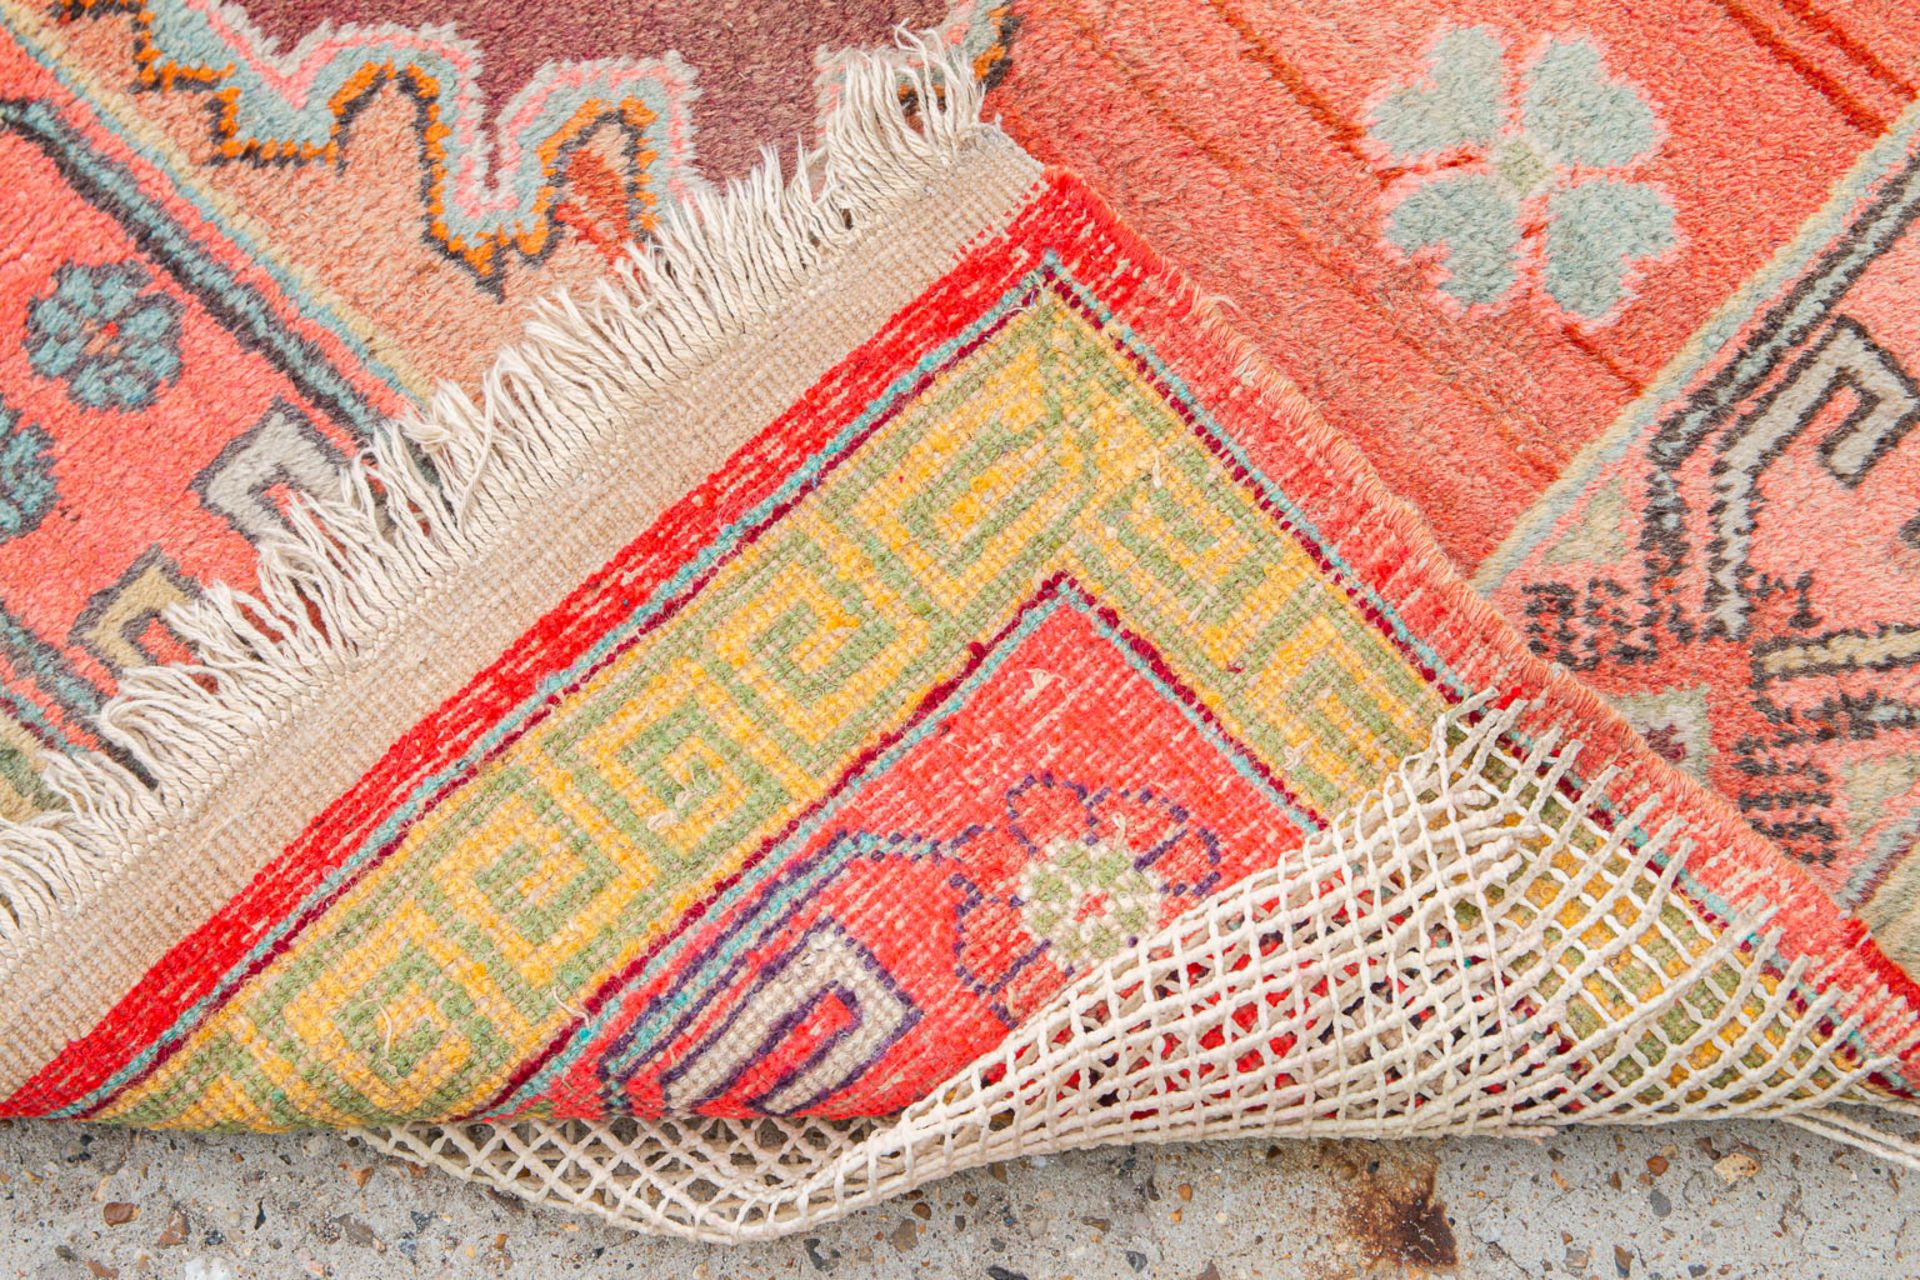 An Oriental hand-made carpet, Samarkand (200 x 135) (200 x 135 cm) - Image 5 of 7